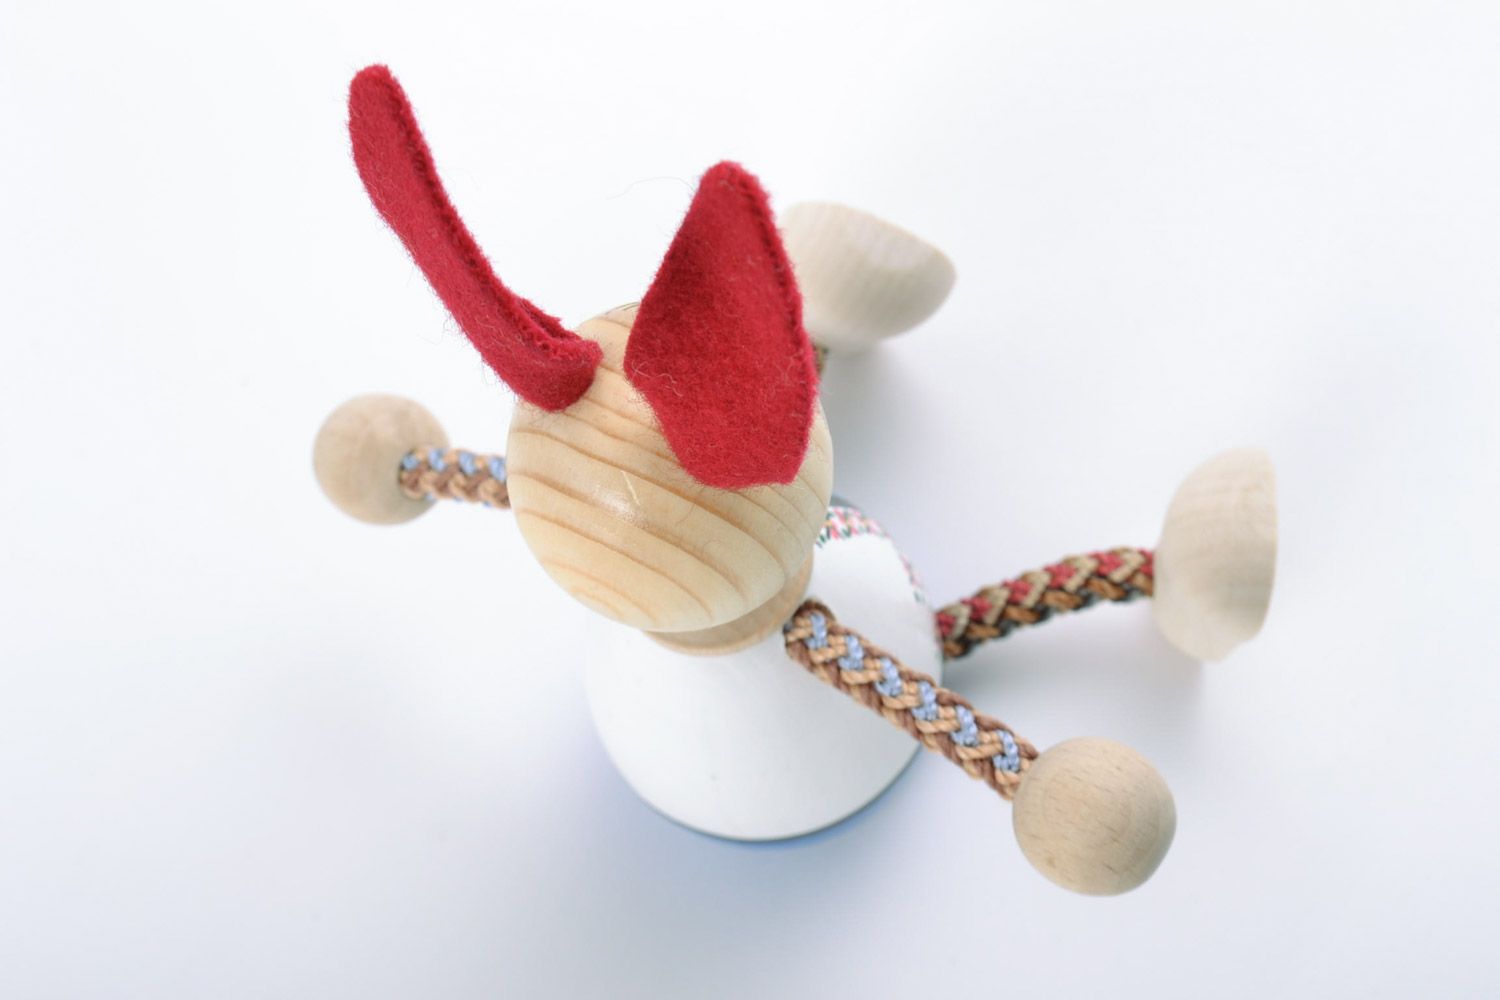 Handmade bemaltes Holz Spielzeug Hase mit langen Ohren Geschenk für Kind  foto 4